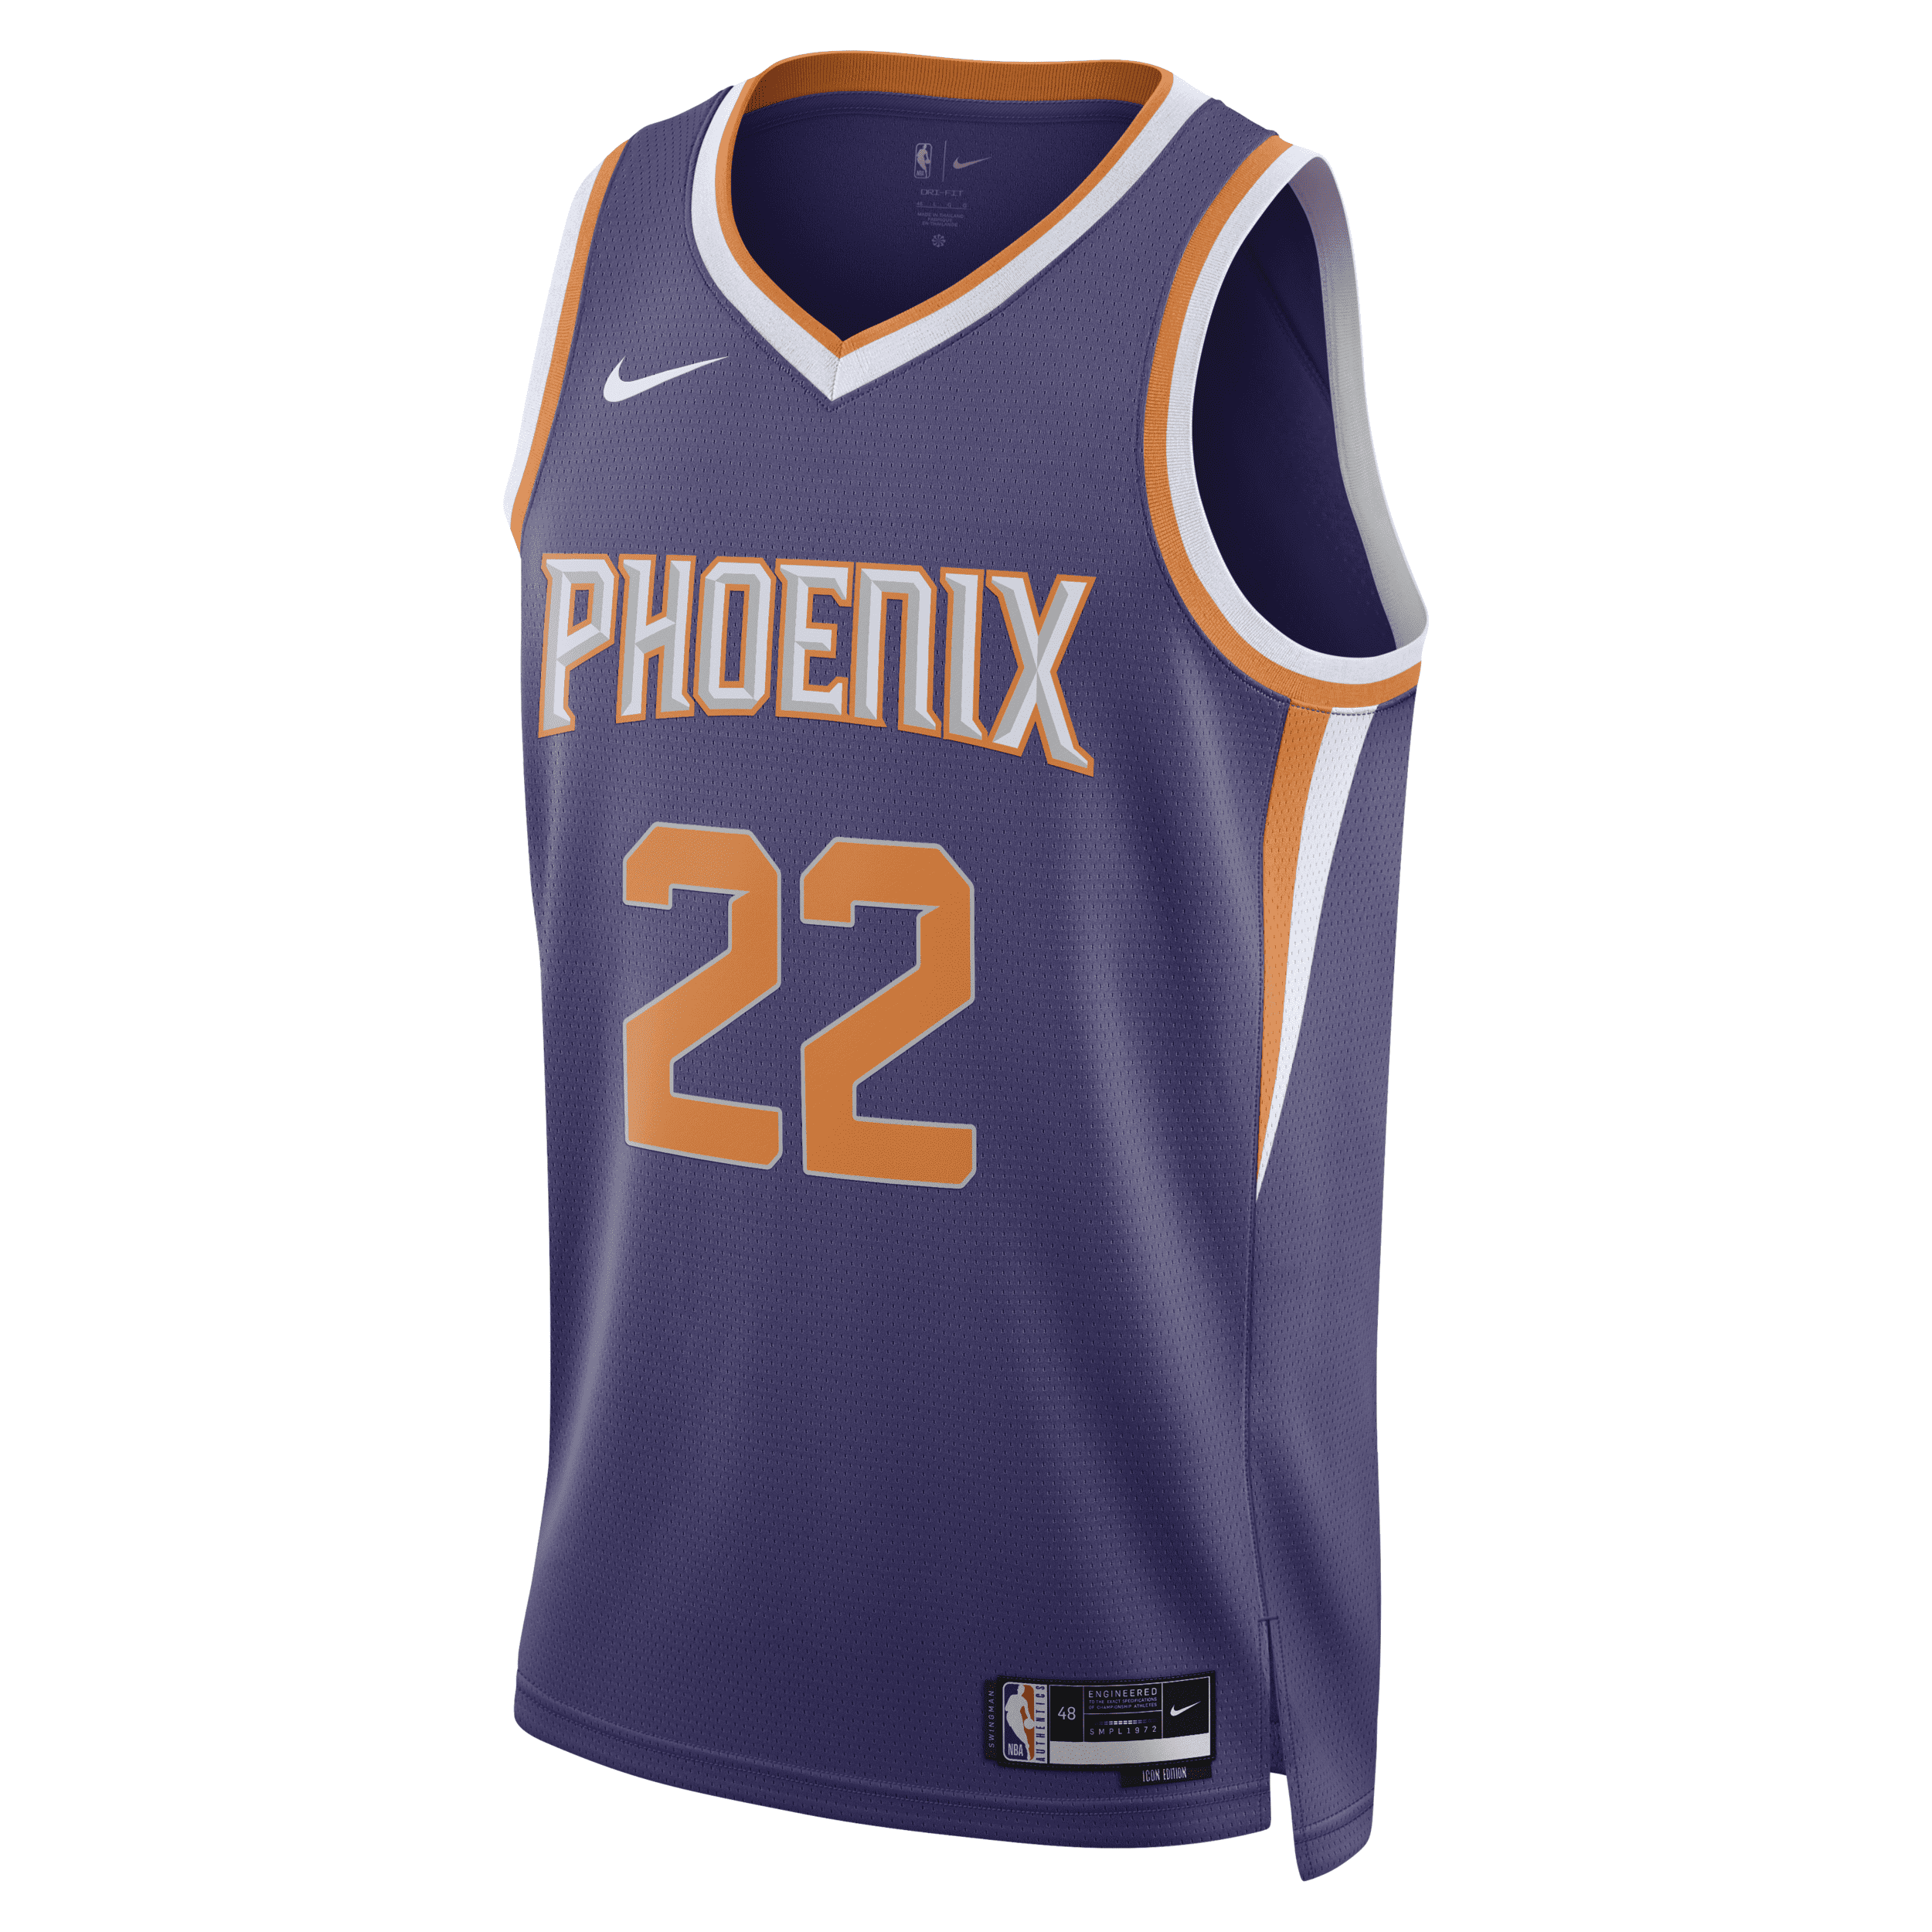 Nike Phoenix Suns Icon Edition 2022/23  Men's Dri-fit Nba Swingman Jersey In Purple